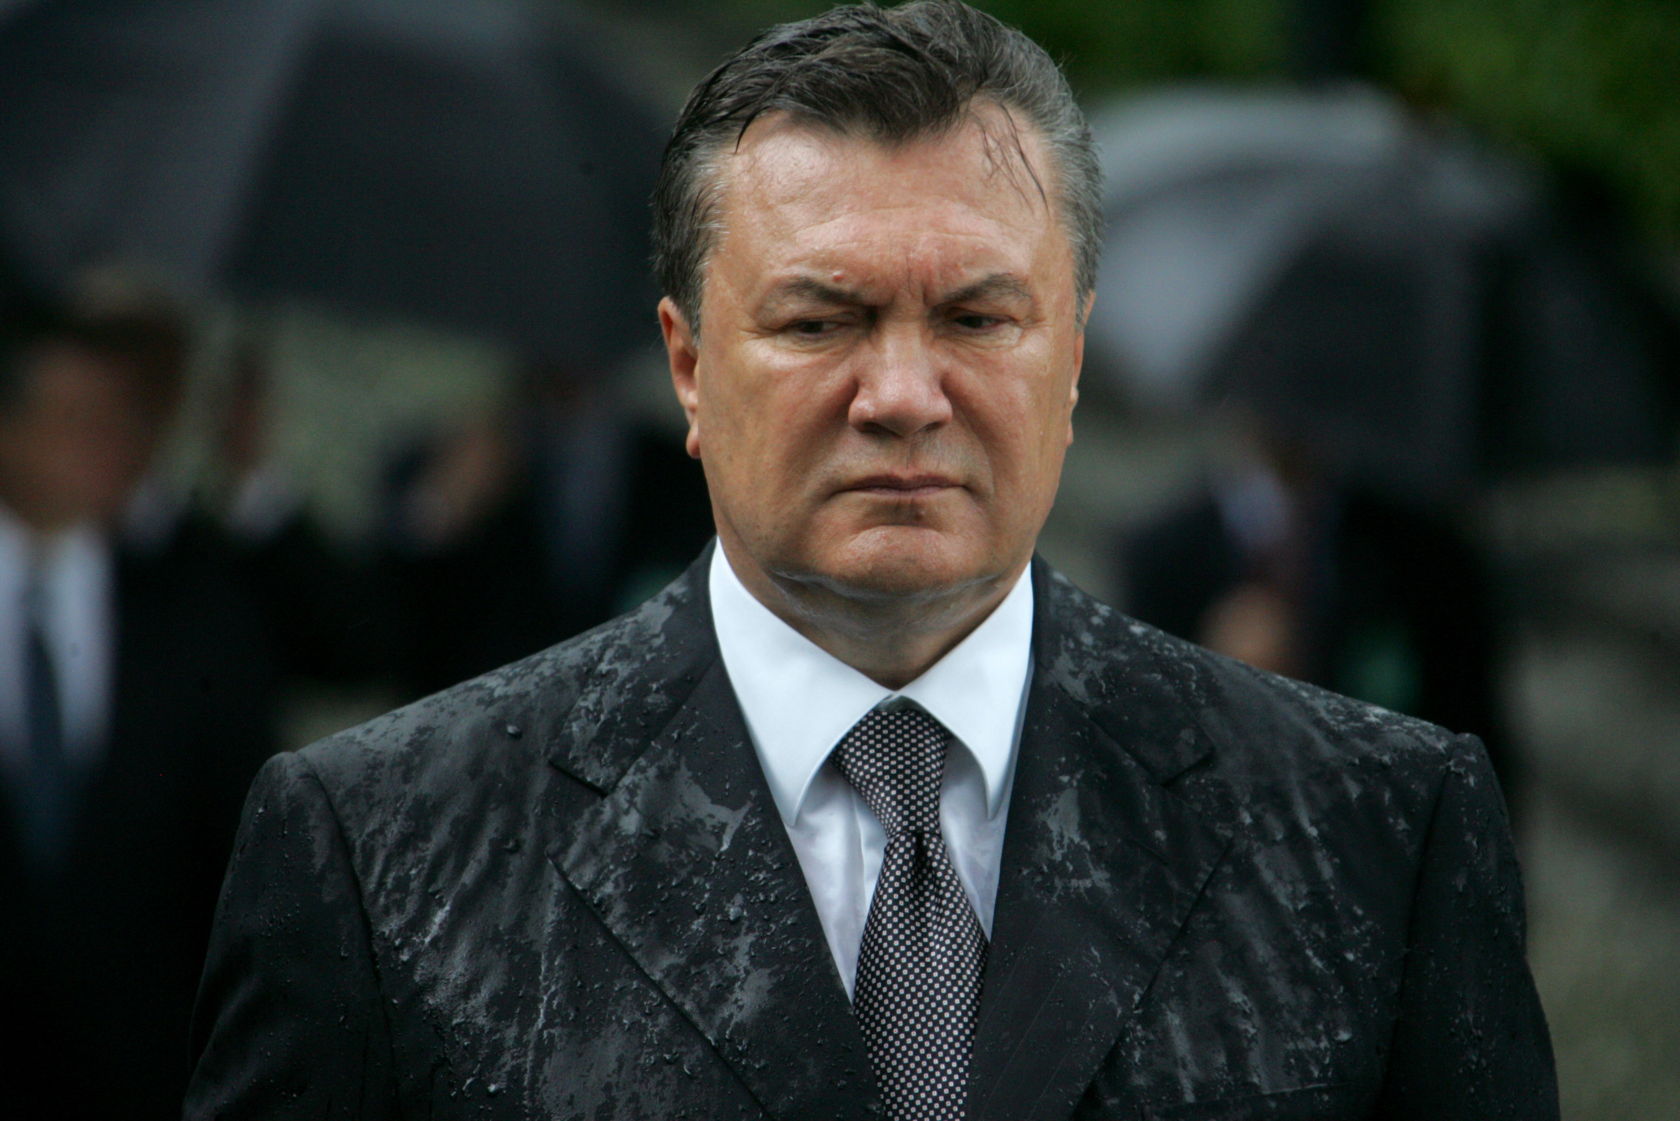 "Катастрофа! В 2014 году в казне оставалось 108 тысяч гривен!" – Янукович украл весь бюджет Украины и увез деньги в Россию: Бурбак опубликовал сенсационный официальный документ